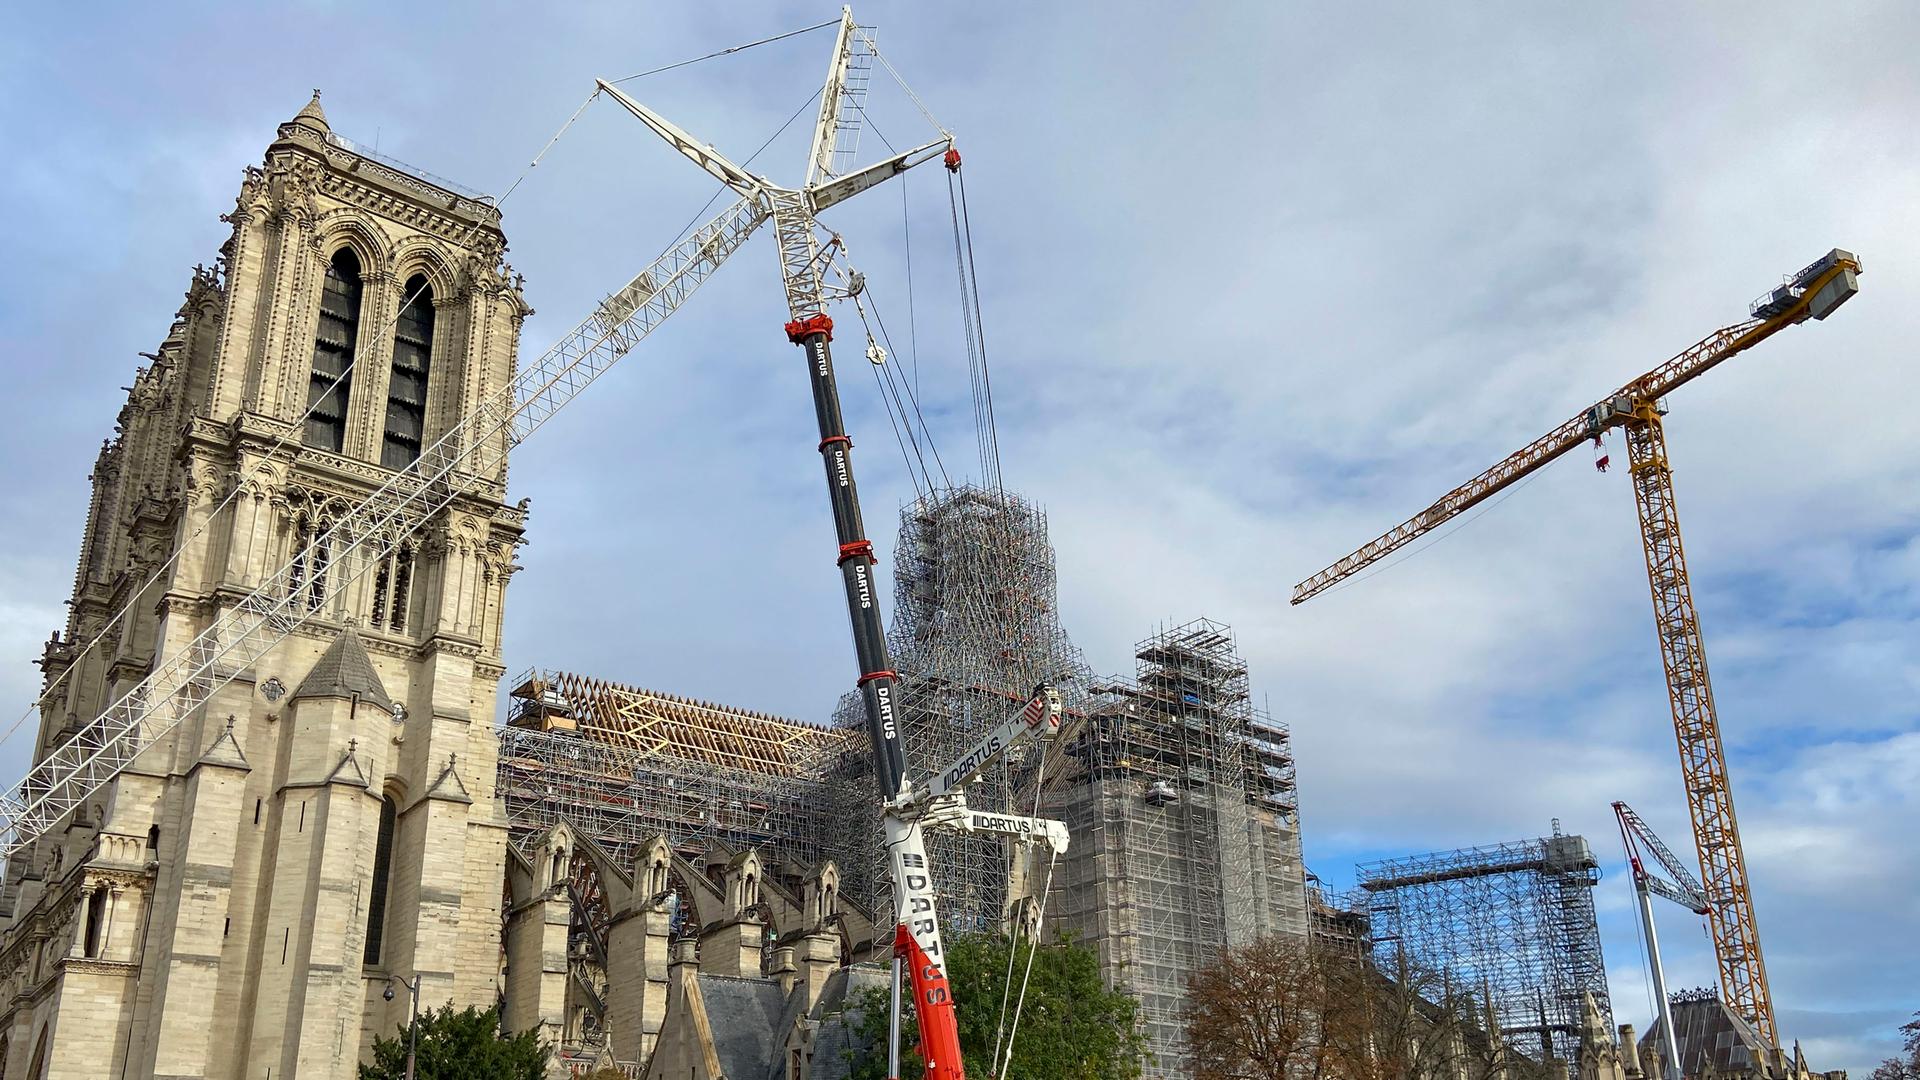 Das Bild zeigt die Bauarbeiten an der Kathedrale Notre-Dame de Paris, in der am 15. April 2019 ein Großbrand entstanden war. Viele Teile des Dachstuhls verbrannten und werden nun wieder aufgebaut. 